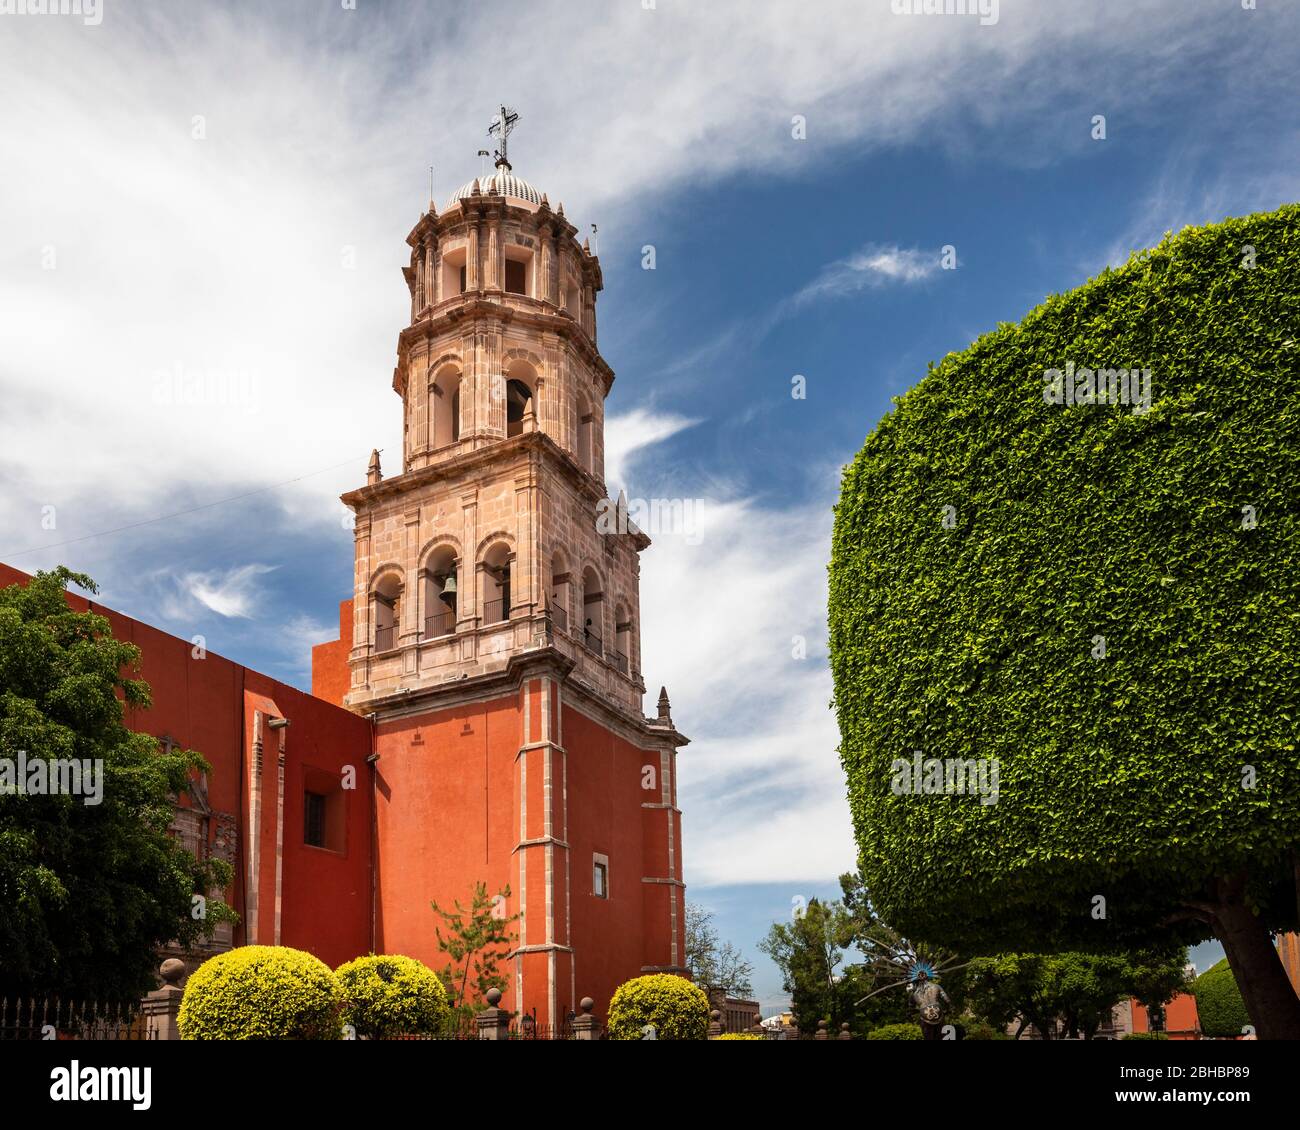 La cathédrale Saint-Philippe Neri de Queretaro, au Mexique. Banque D'Images